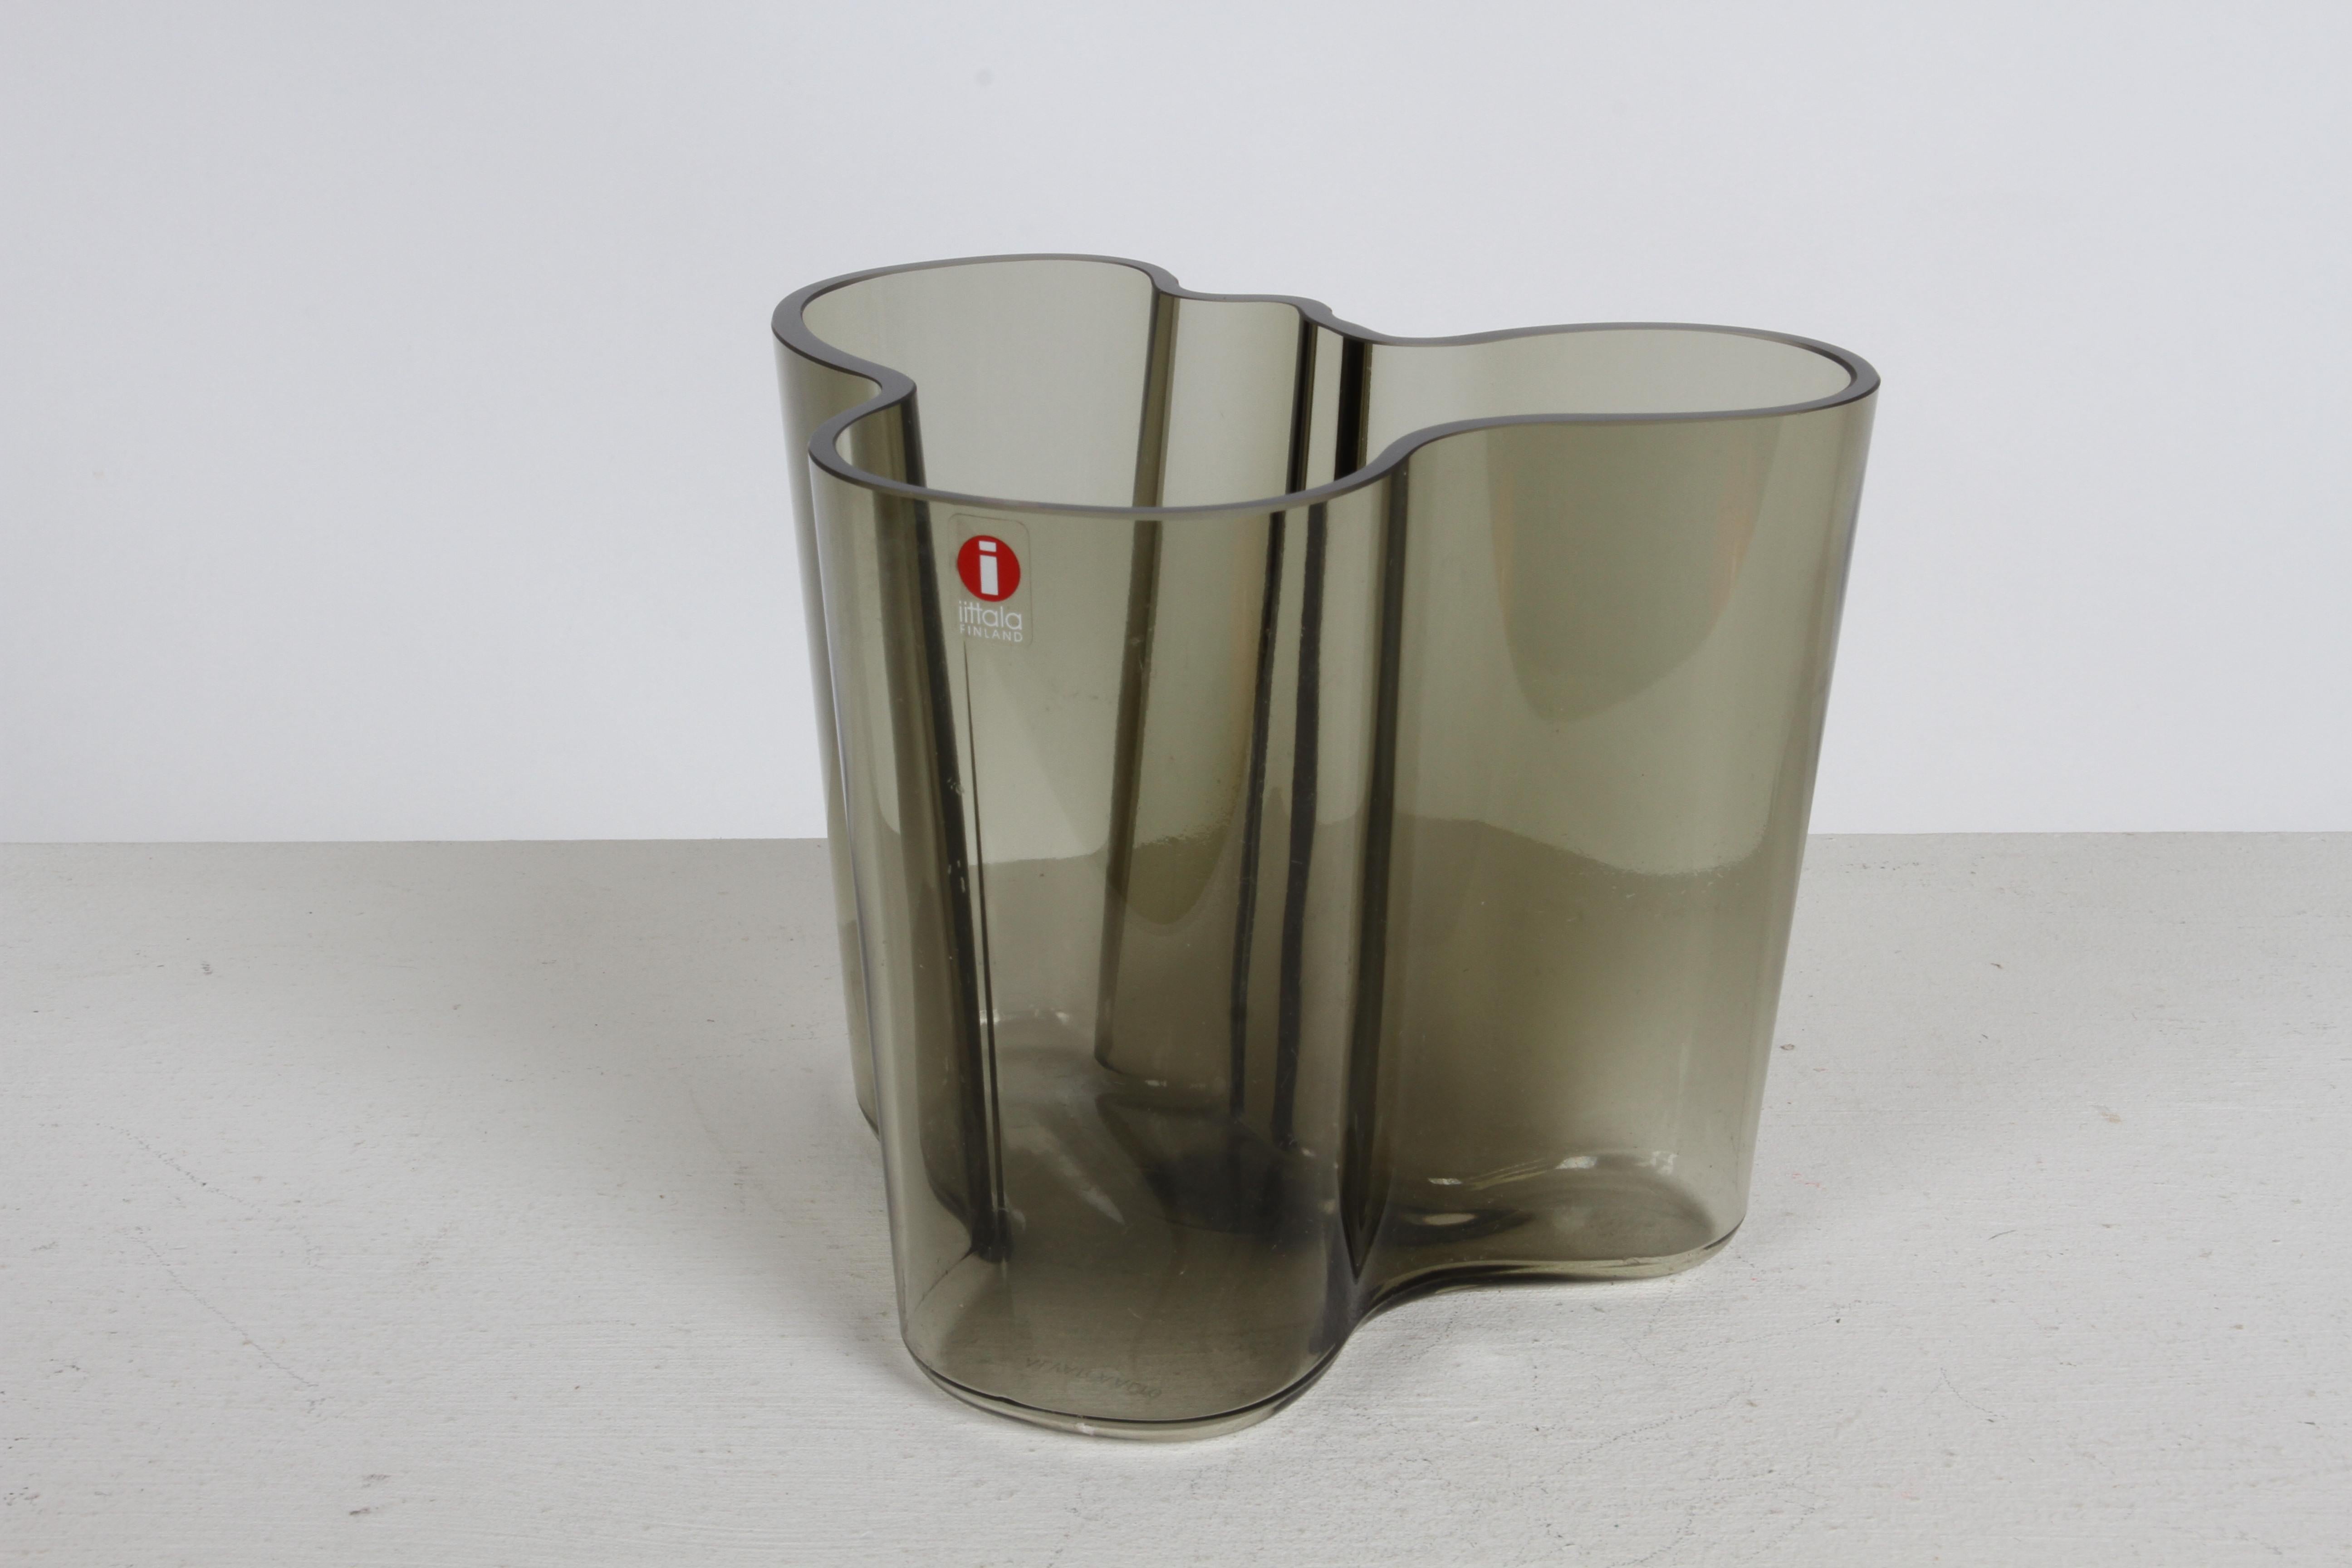 Die berühmte Mid-Century Alvar Aalto Savoy Vase 3030 in selten gesehenem rauchgrauem Glas von Iittala Finnland. Das originale Label ist erhalten, ebenso die geätzte Signatur von Alvar Aalto am Boden. 